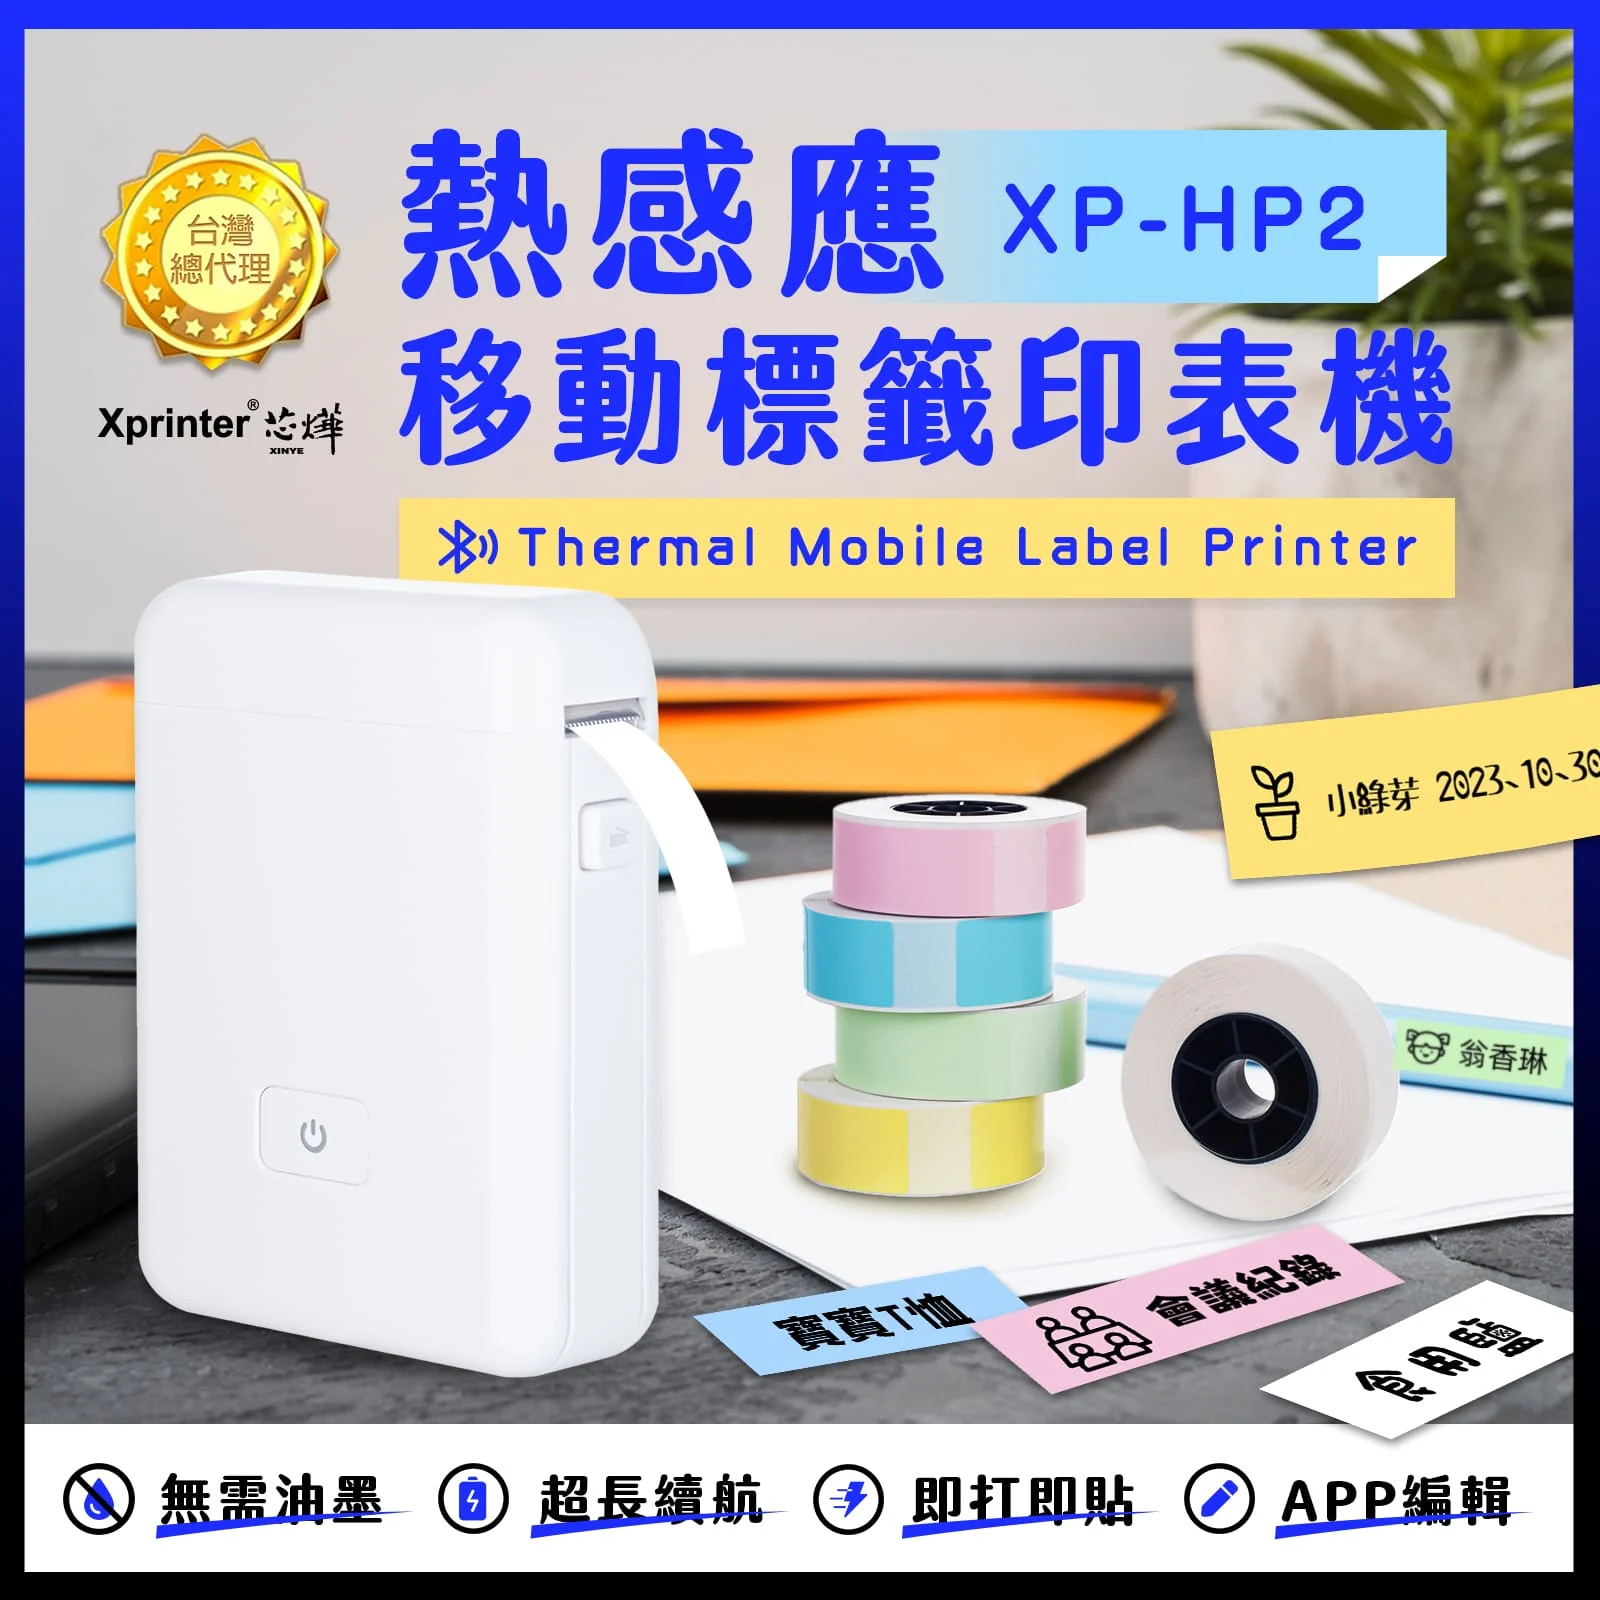 芯燁台灣總代理藍芽標籤機 Xp Hp2 打印機 標籤貼紙機 芯燁標籤機 貼紙機 姓名貼 產品標示 打價寶 迷你標籤機 1